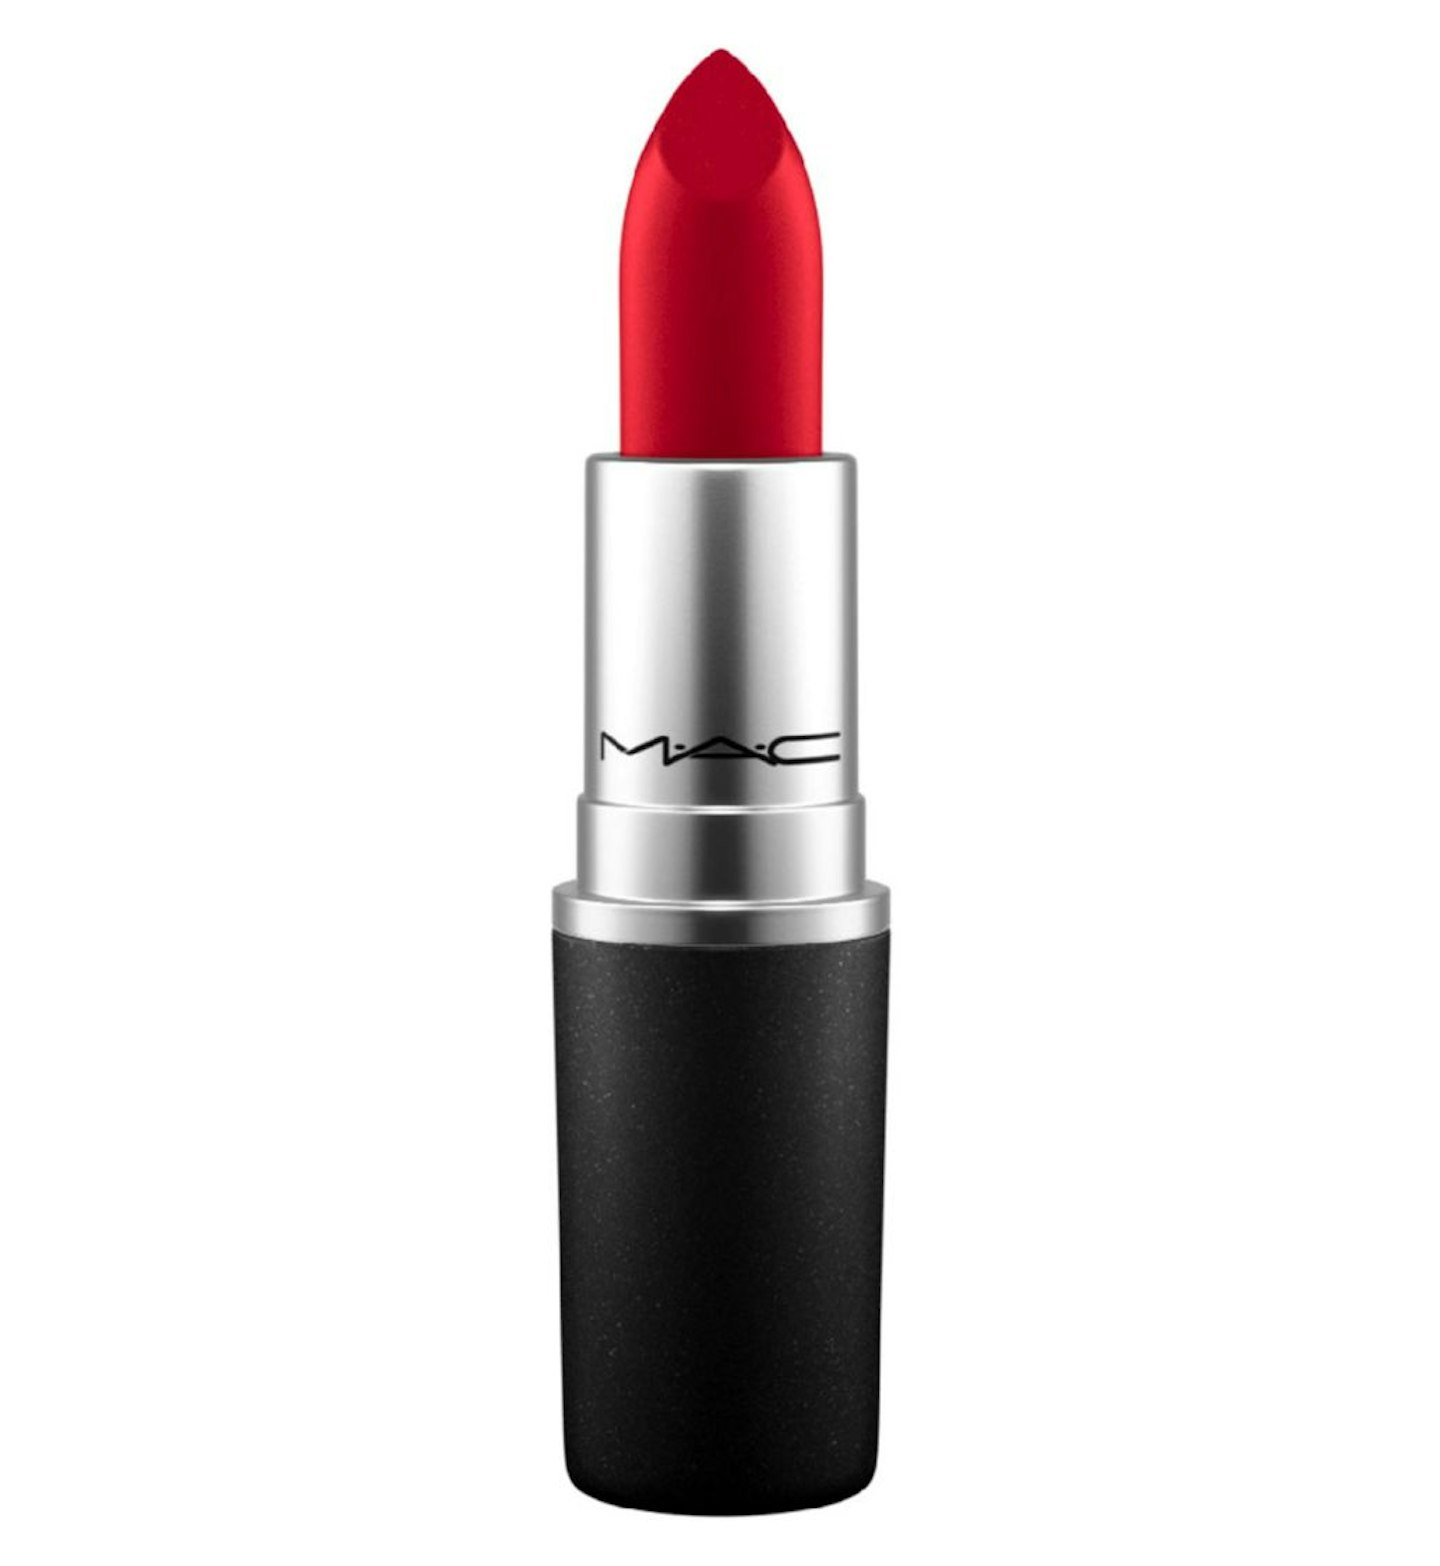  MAC Retro Matte Lipstick in Ruby Woo